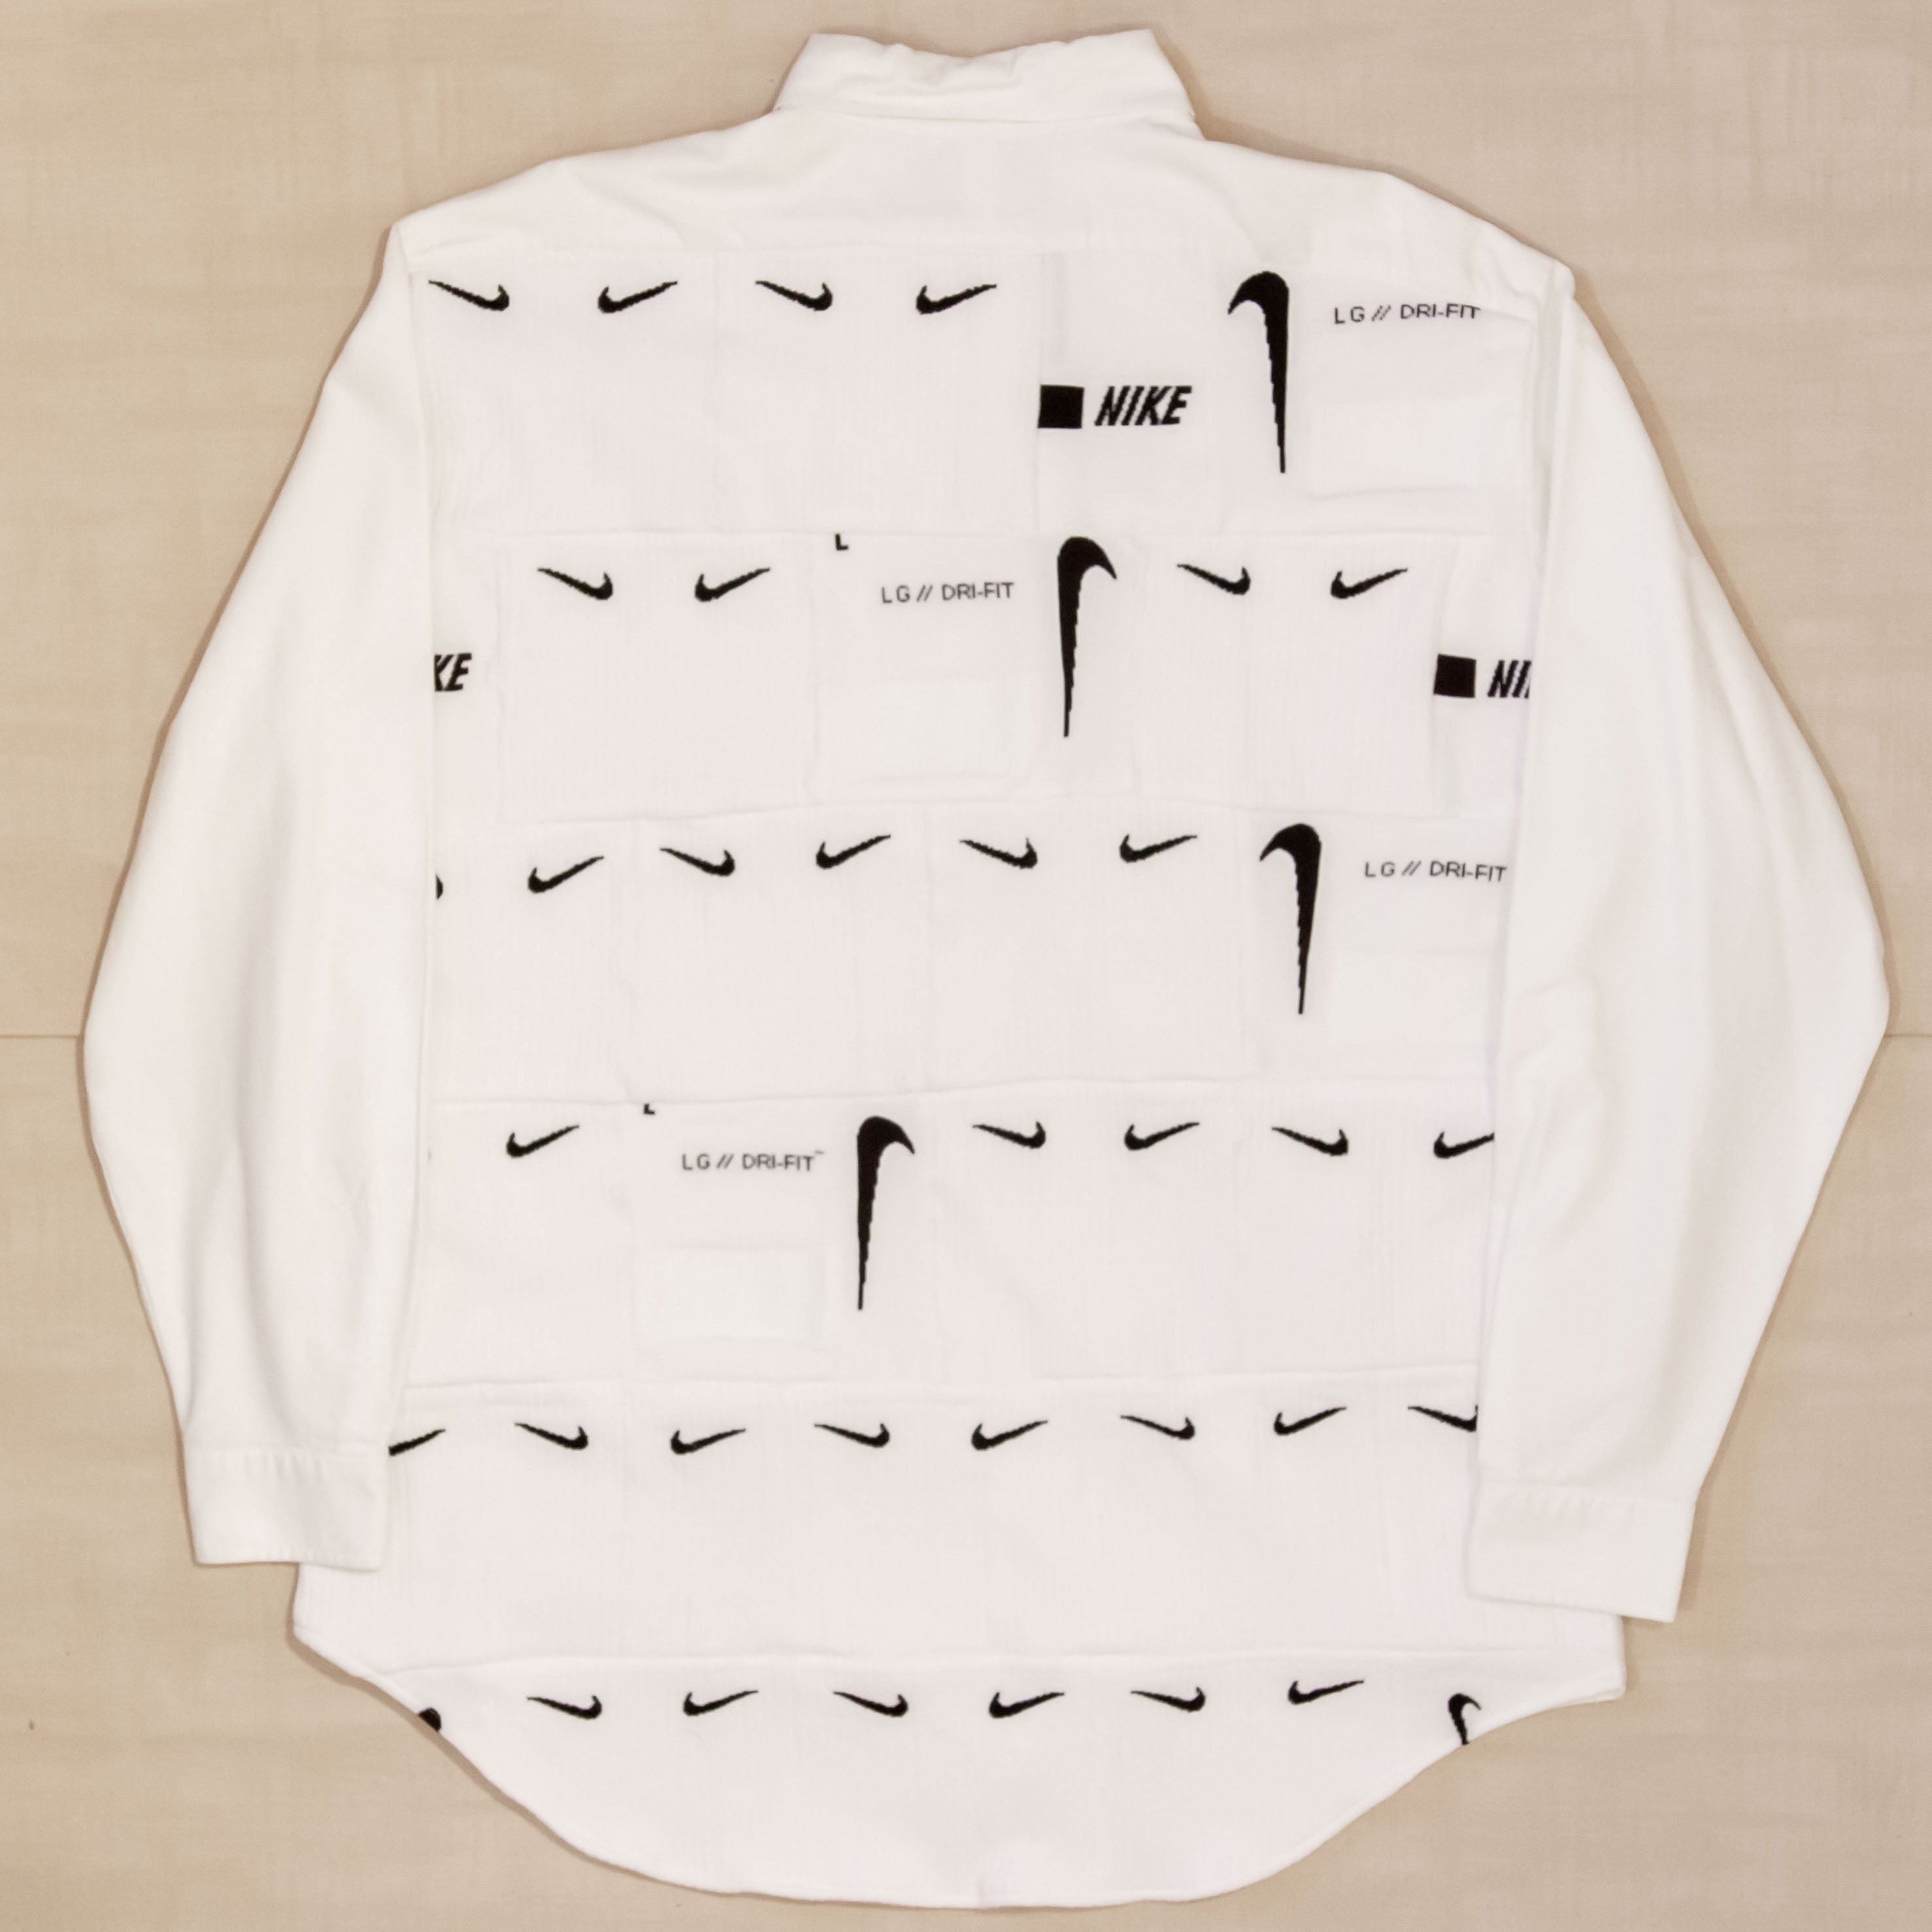 Ralph Lauren X Nike Shirt (pre-order)